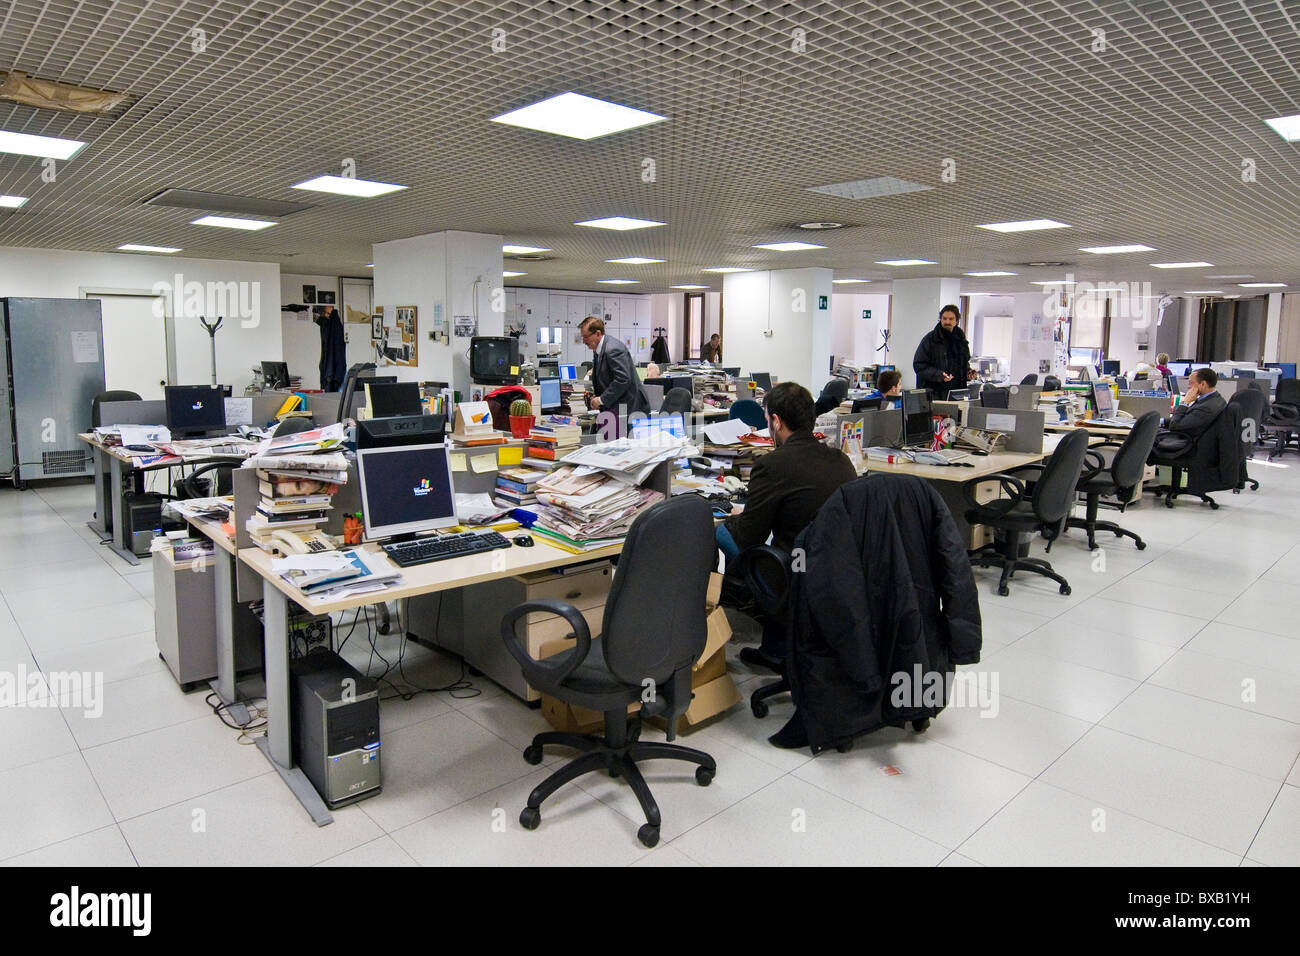 Libero ufficio editoriale, Milano, Italia Foto Stock